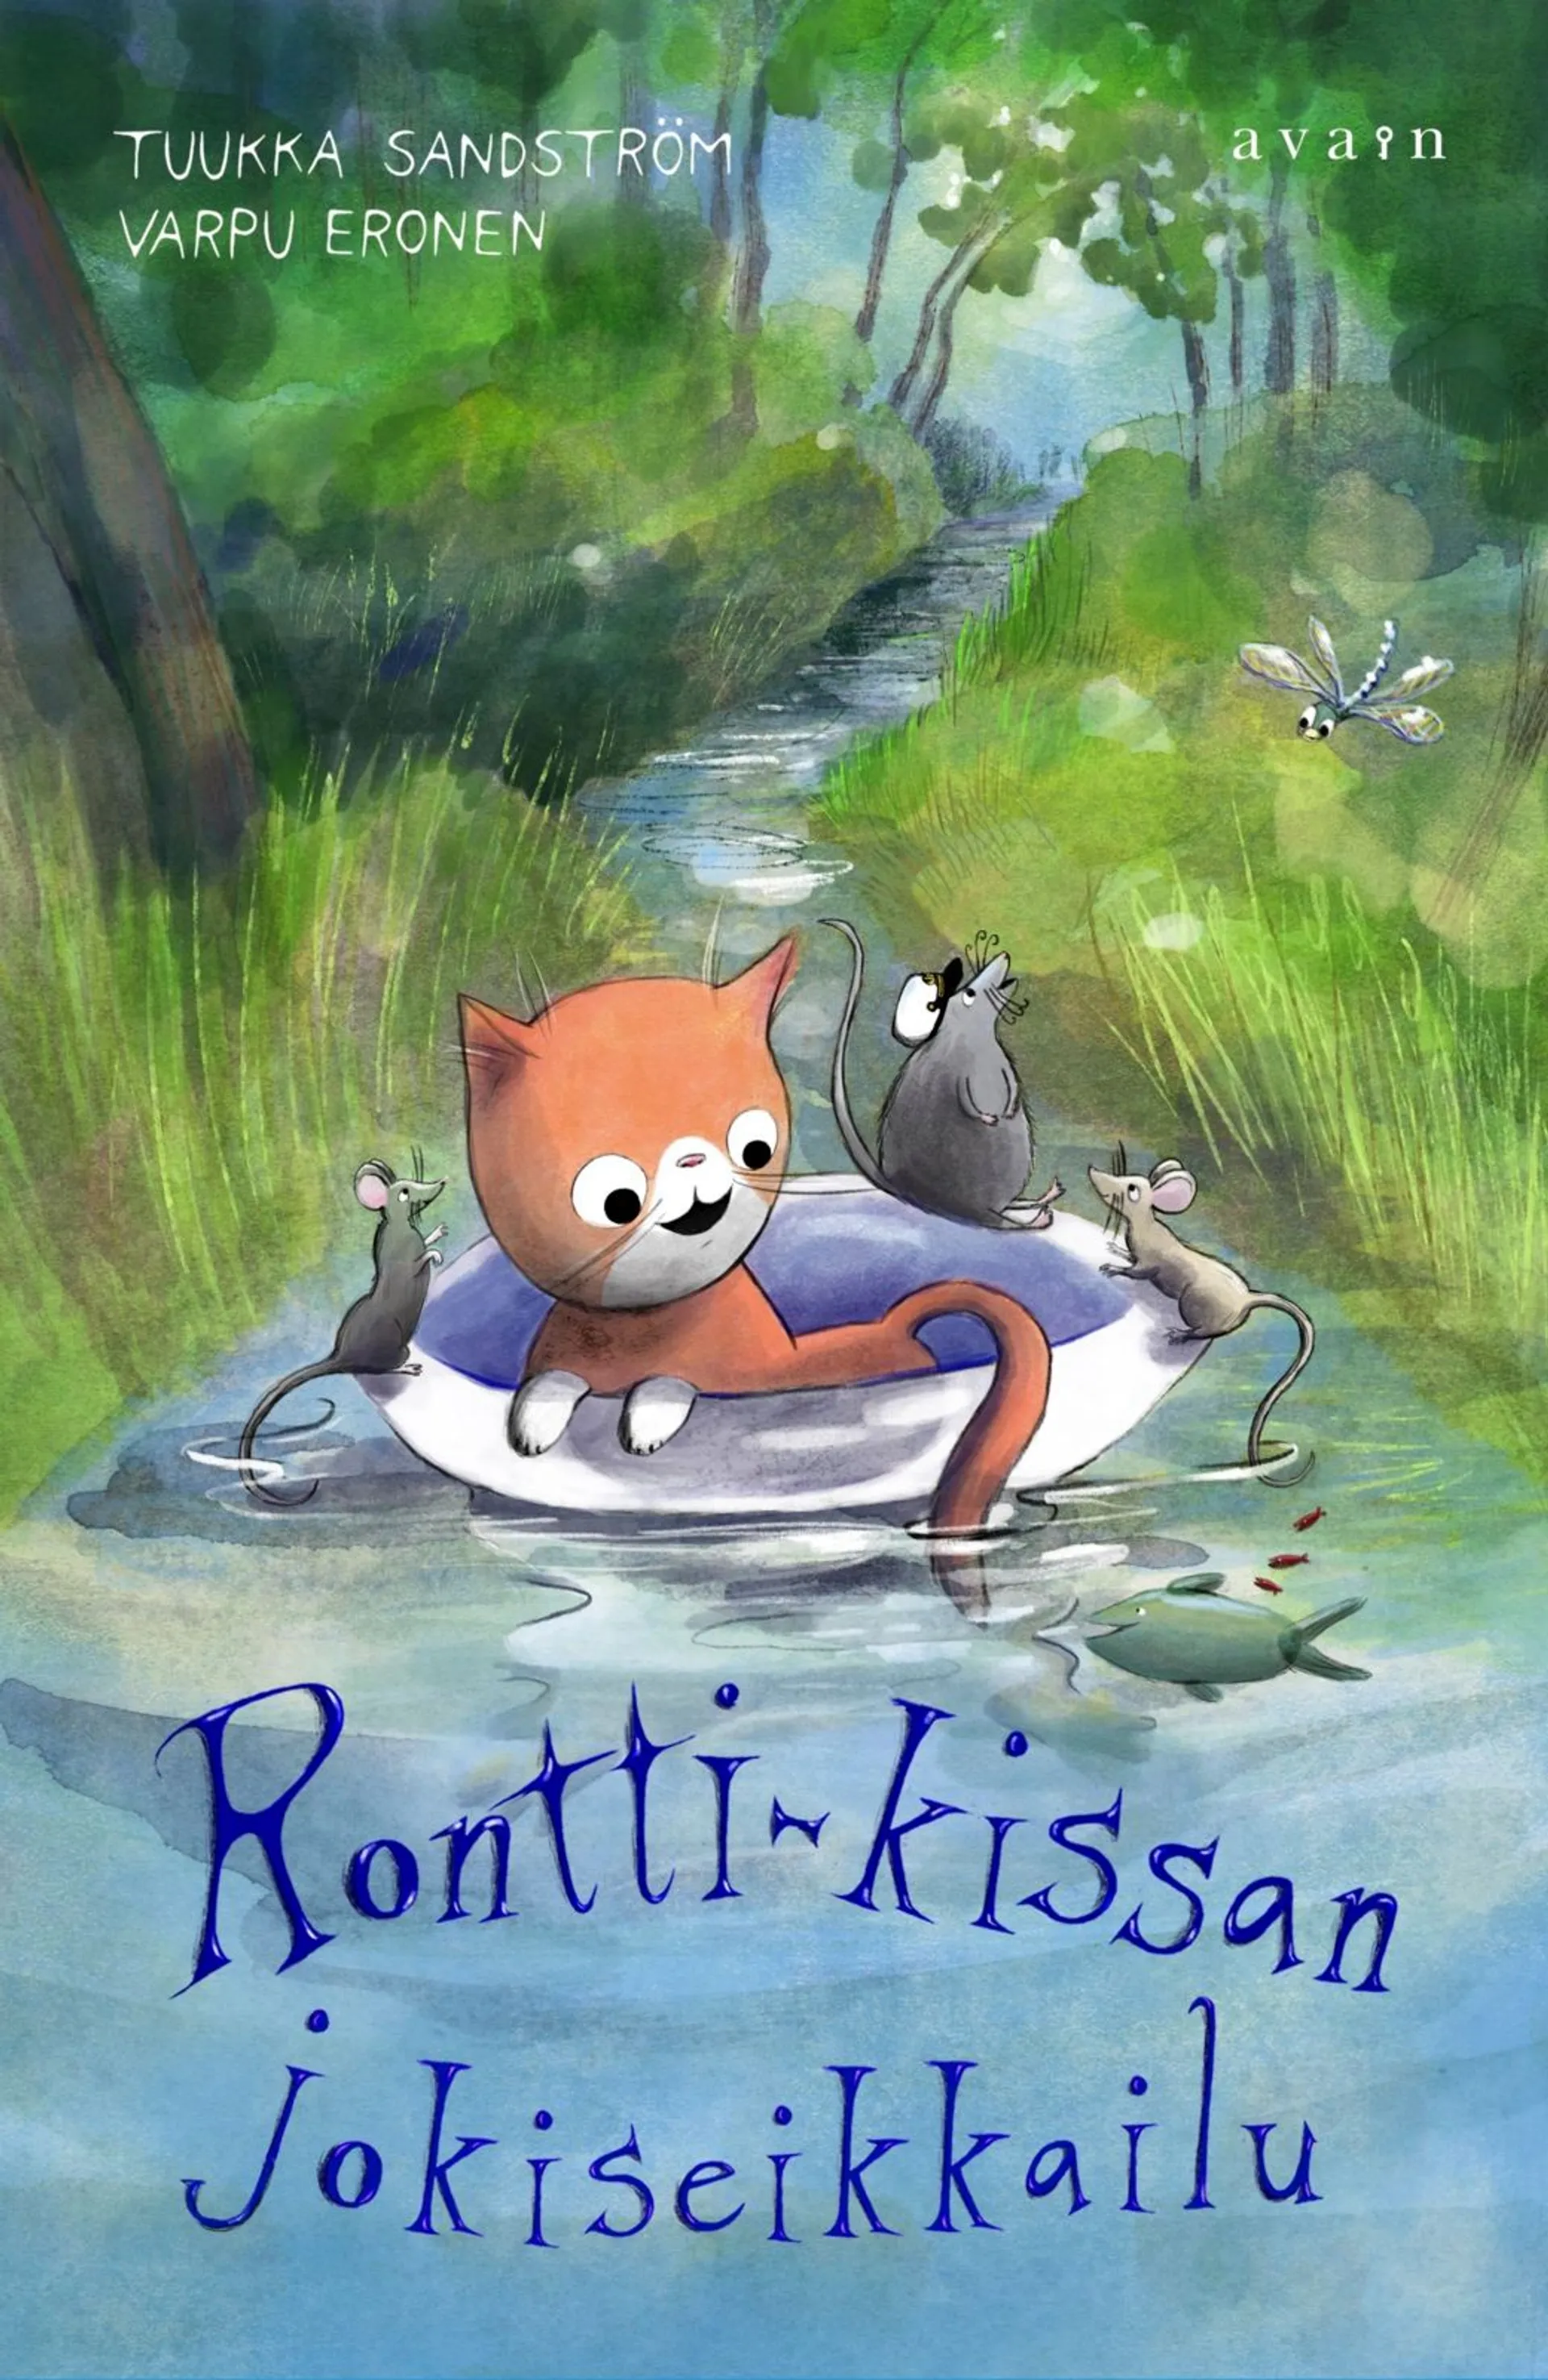 Sandström, Rontti-kissan jokiseikkailu